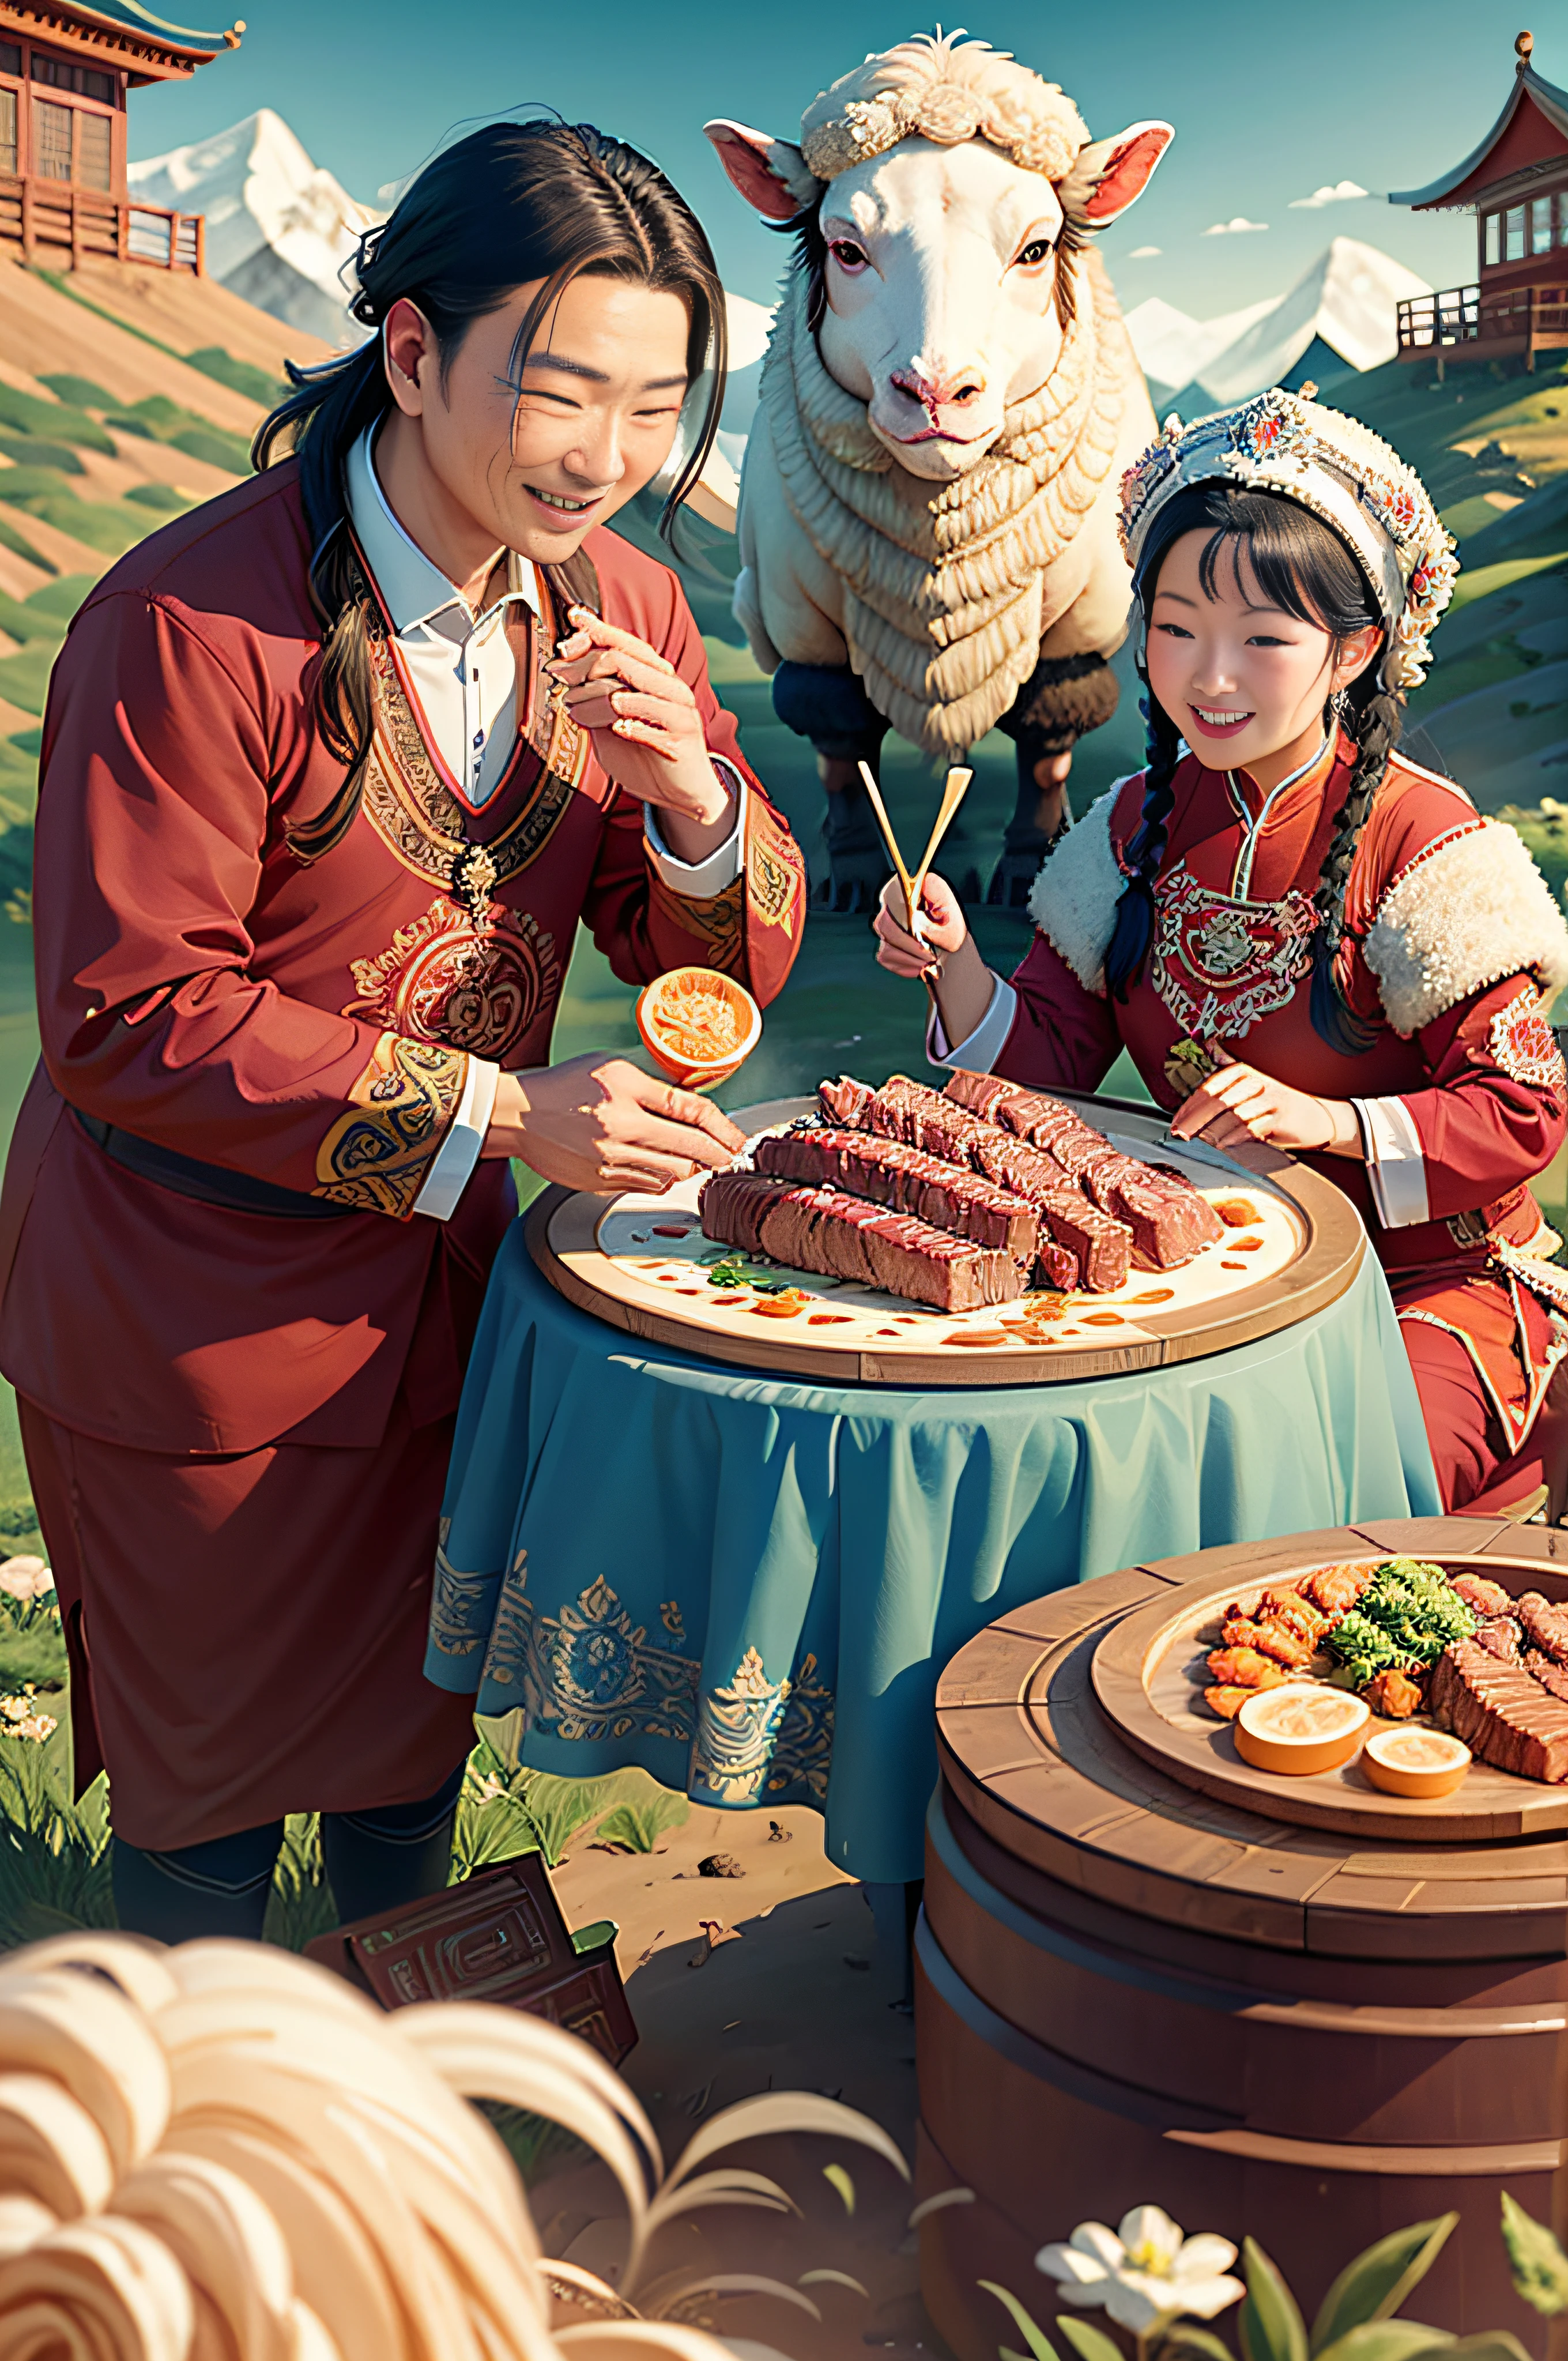 Ein mongolisches Paar，Glücklich，froh，Rindfleisch mit Soße essen，Schaf，Herde，Soße，Grasfläche